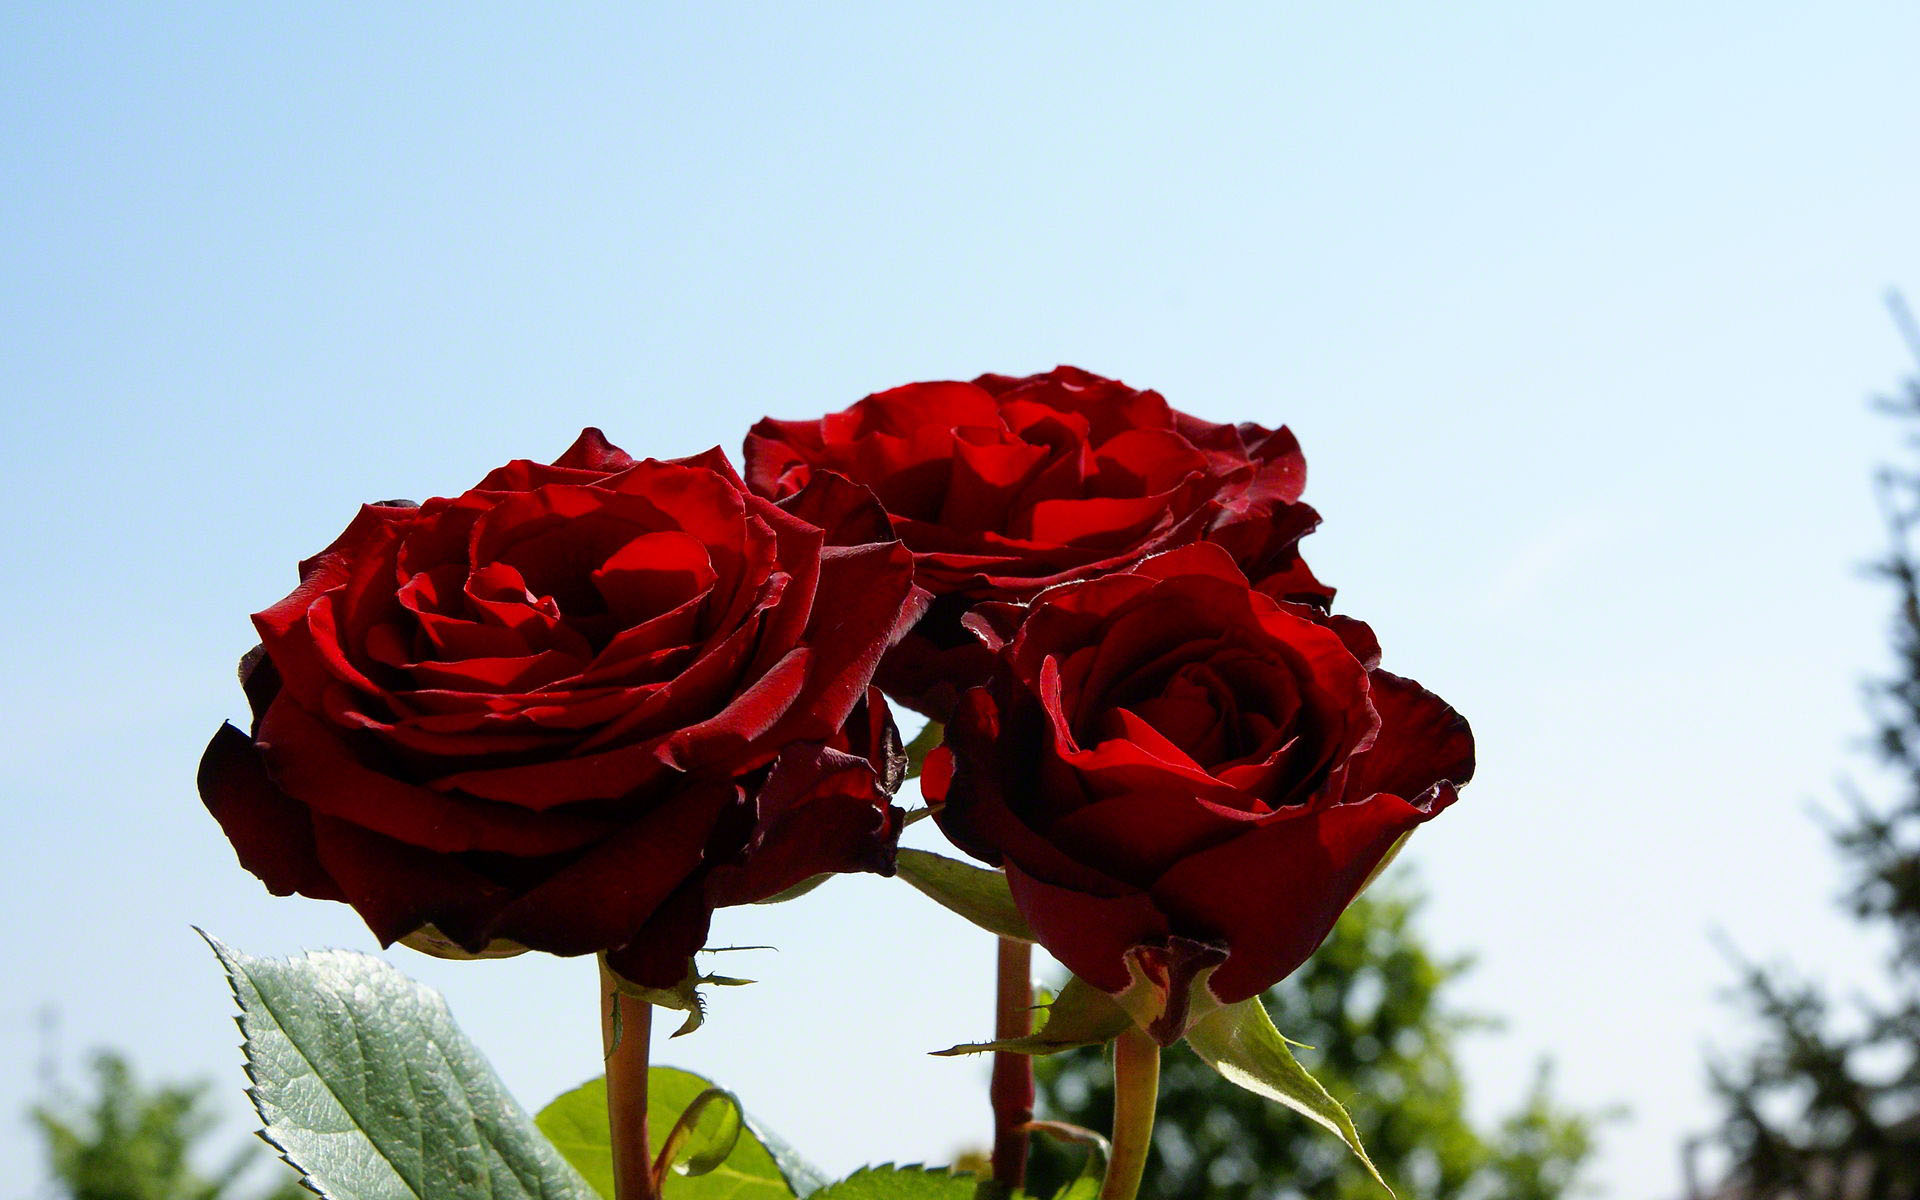 Three romantic red roses